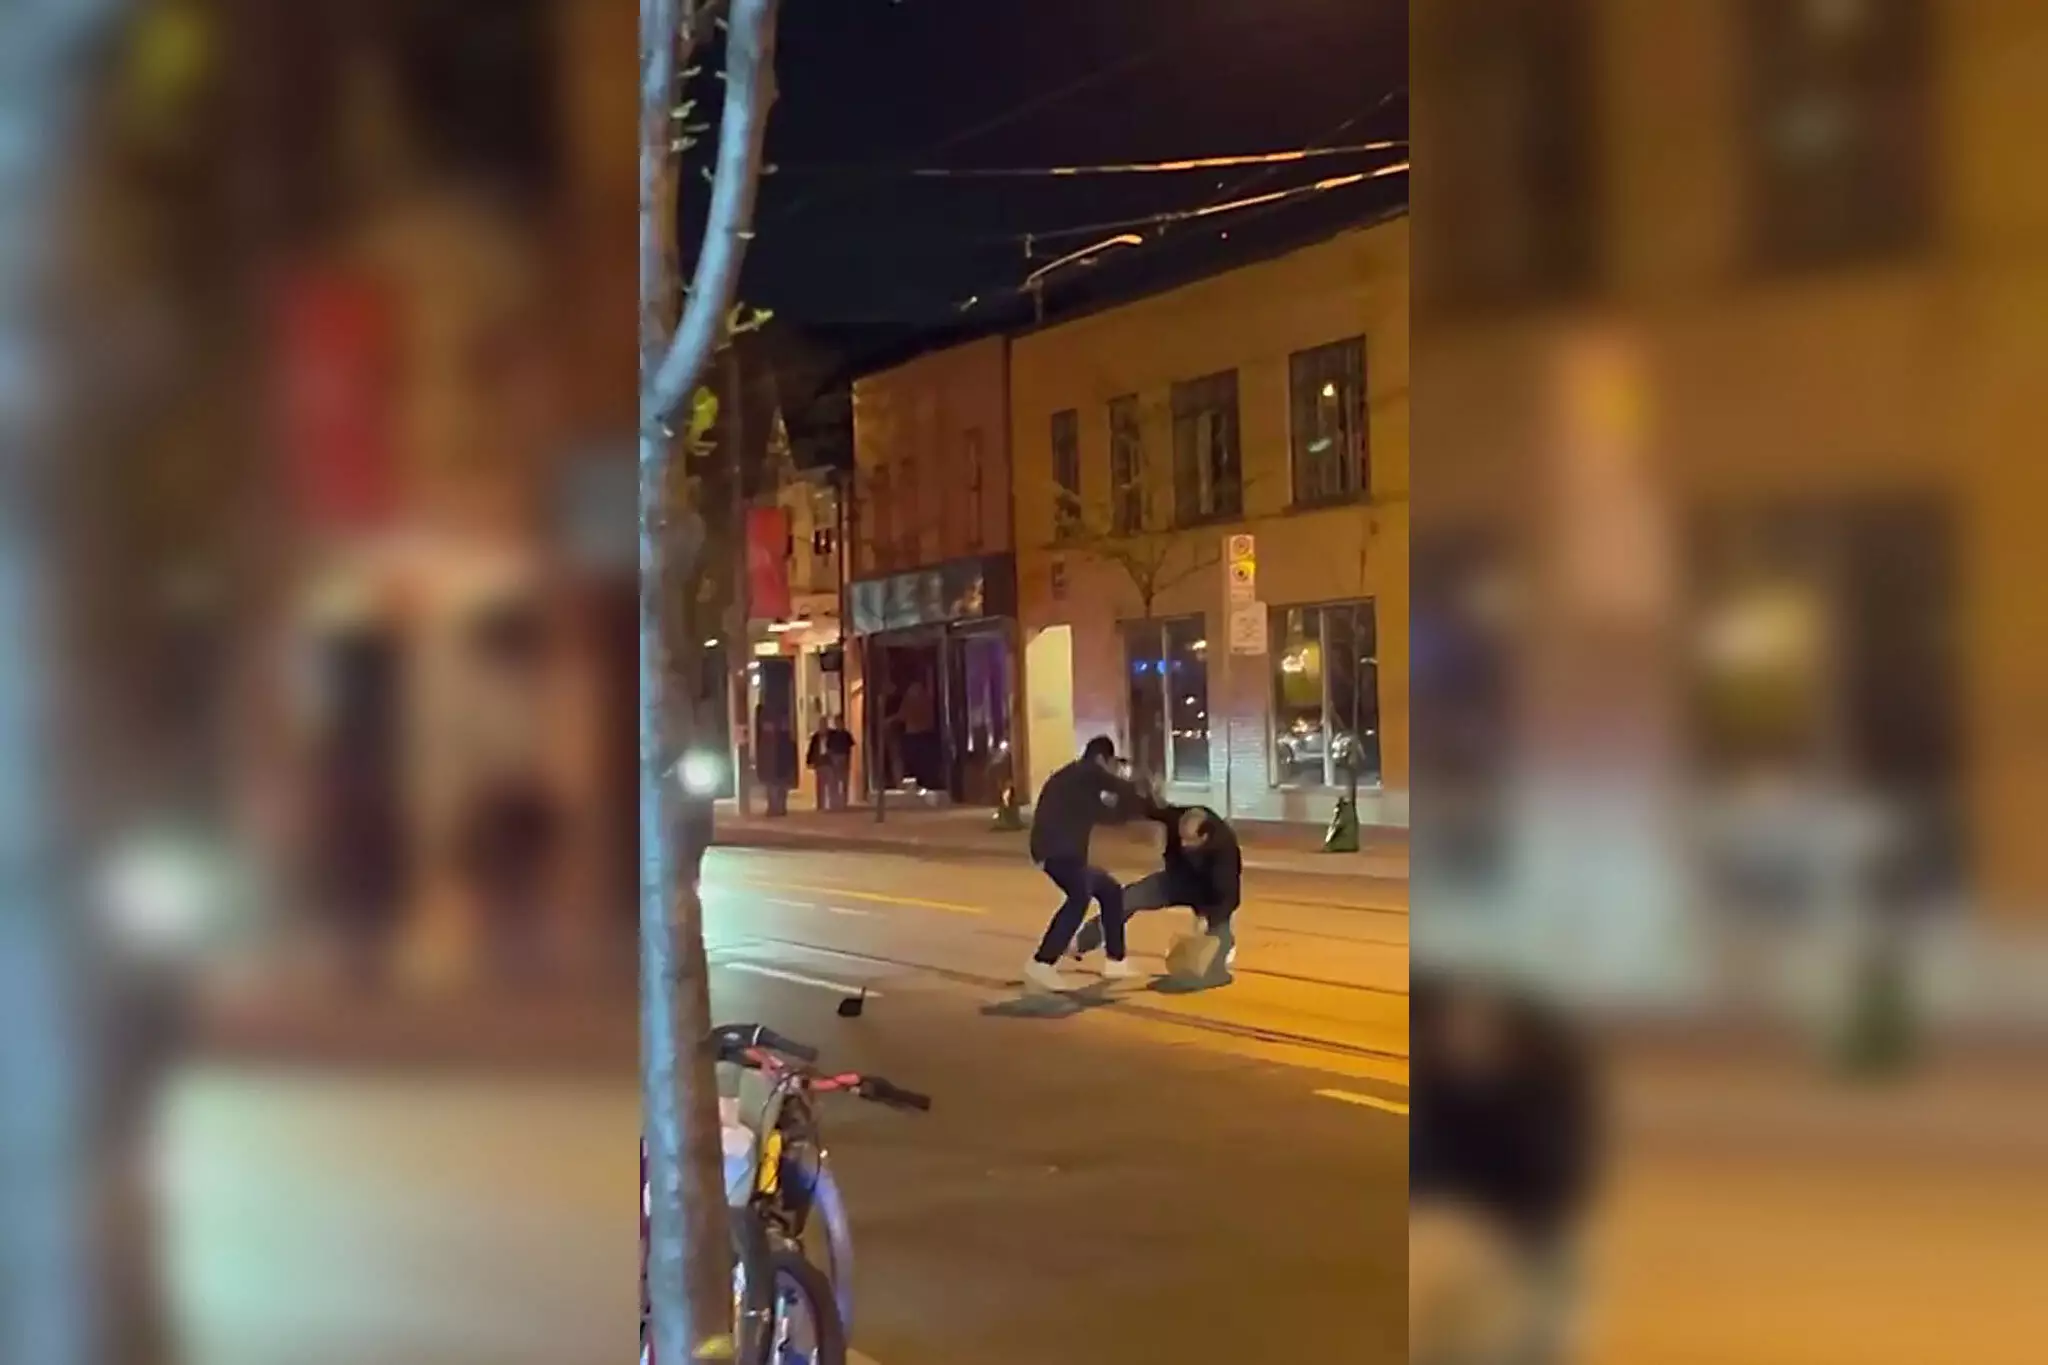 رجل يضرب آخر بثعبان حي أثناء مشاجرة في الشارع في تورنتو